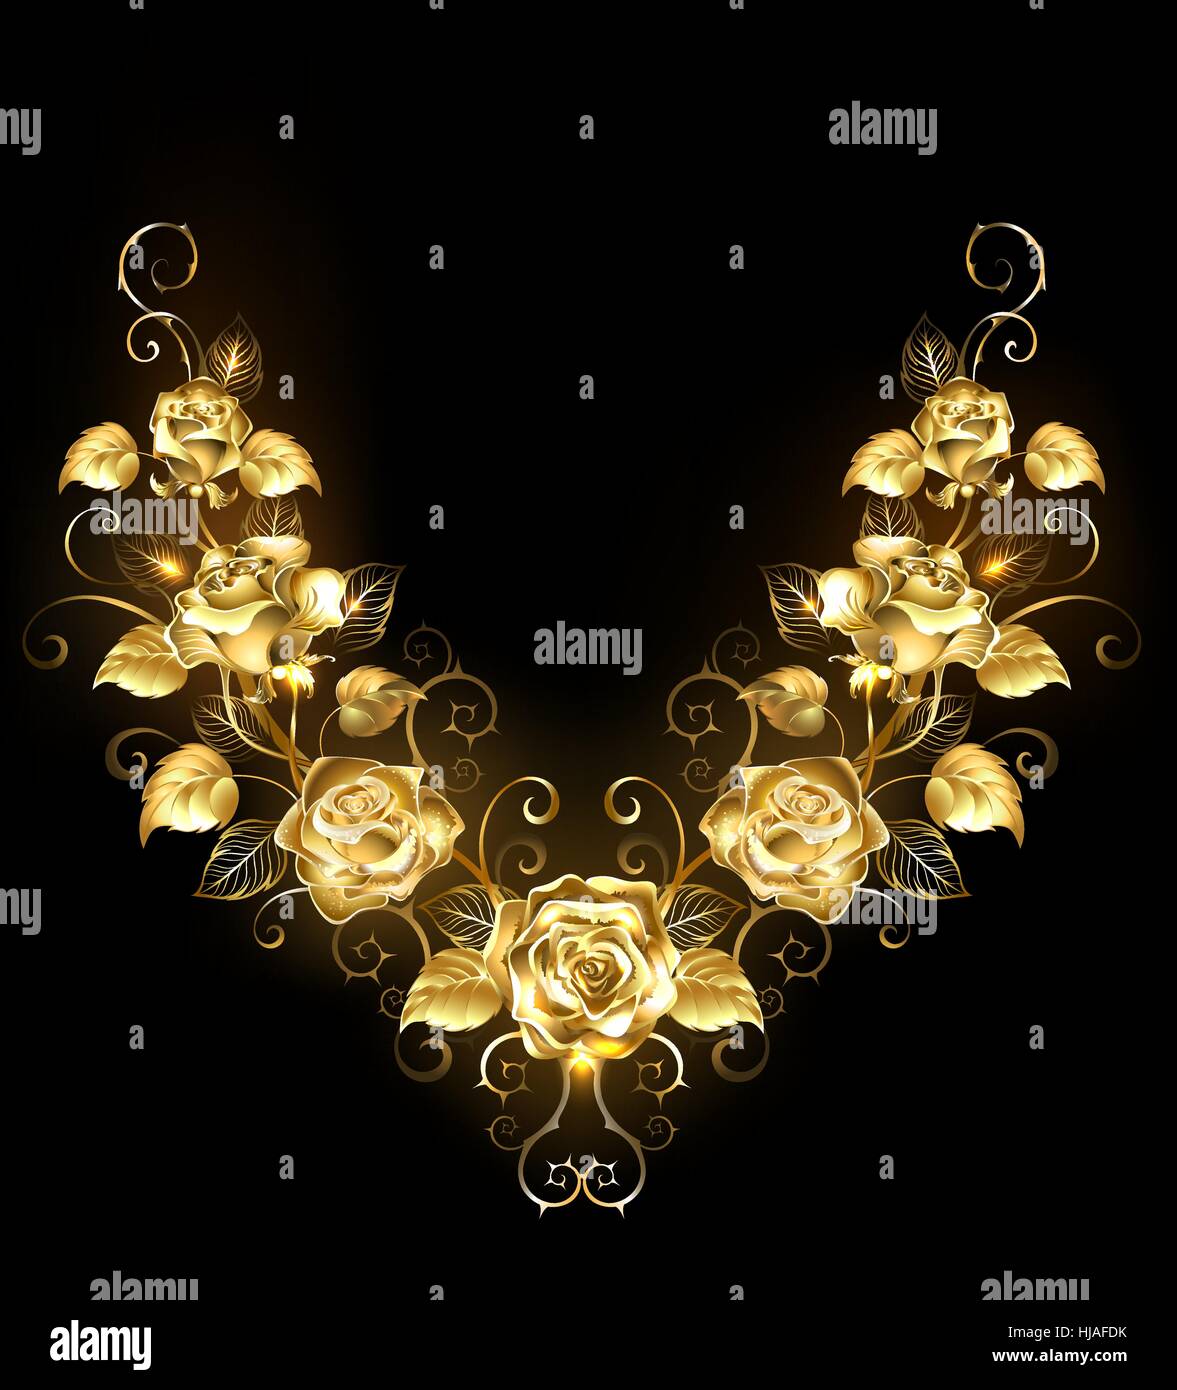 Symmetrische Muster glänzend, gold, verdrehte Rosen auf schwarzem Hintergrund. Goldene Rose. Stock Vektor